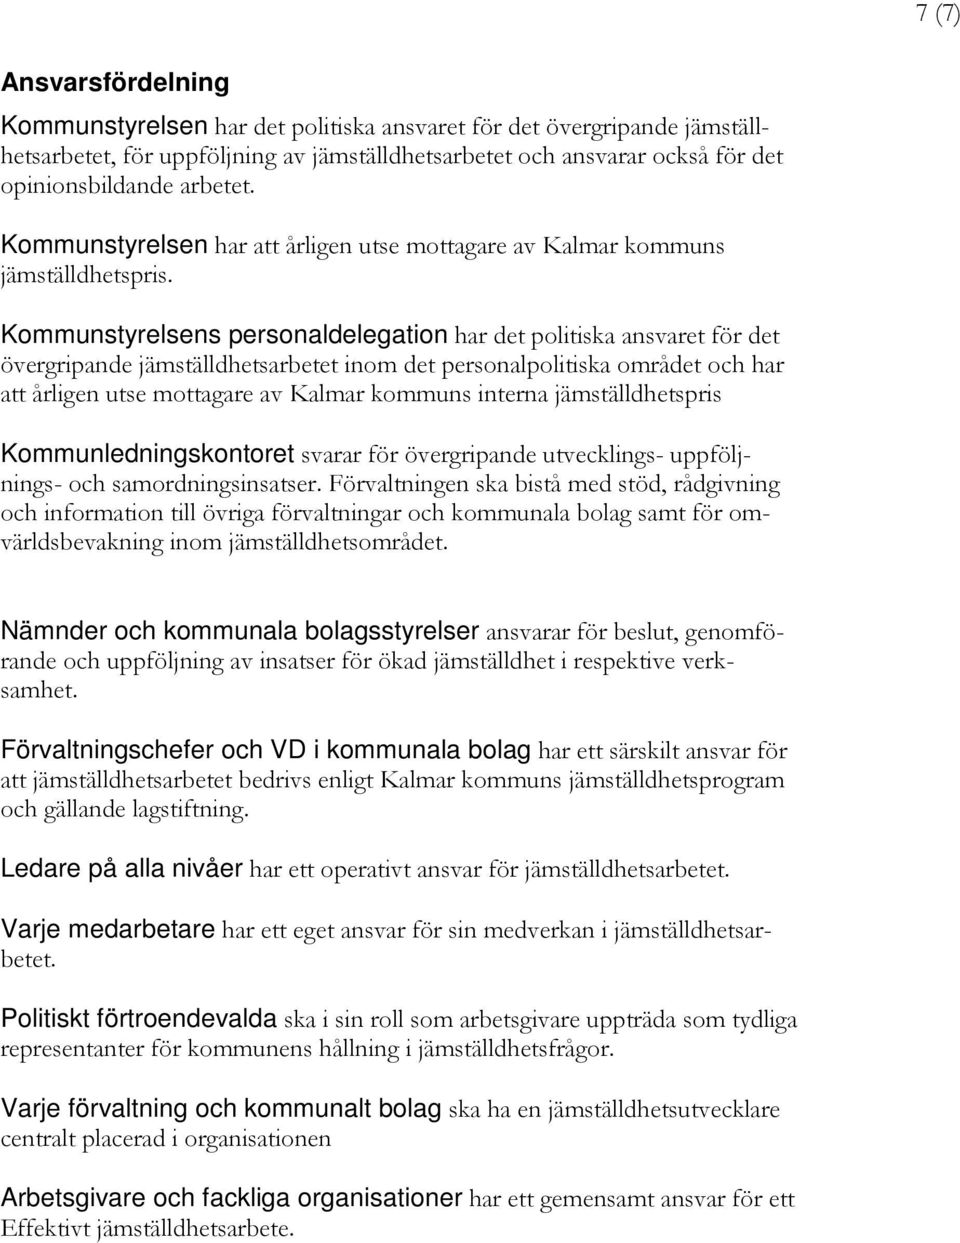 Kommunstyrelsens personaldelegation har det politiska ansvaret för det övergripande jämställdhetsarbetet inom det personalpolitiska området och har att årligen utse mottagare av Kalmar kommuns